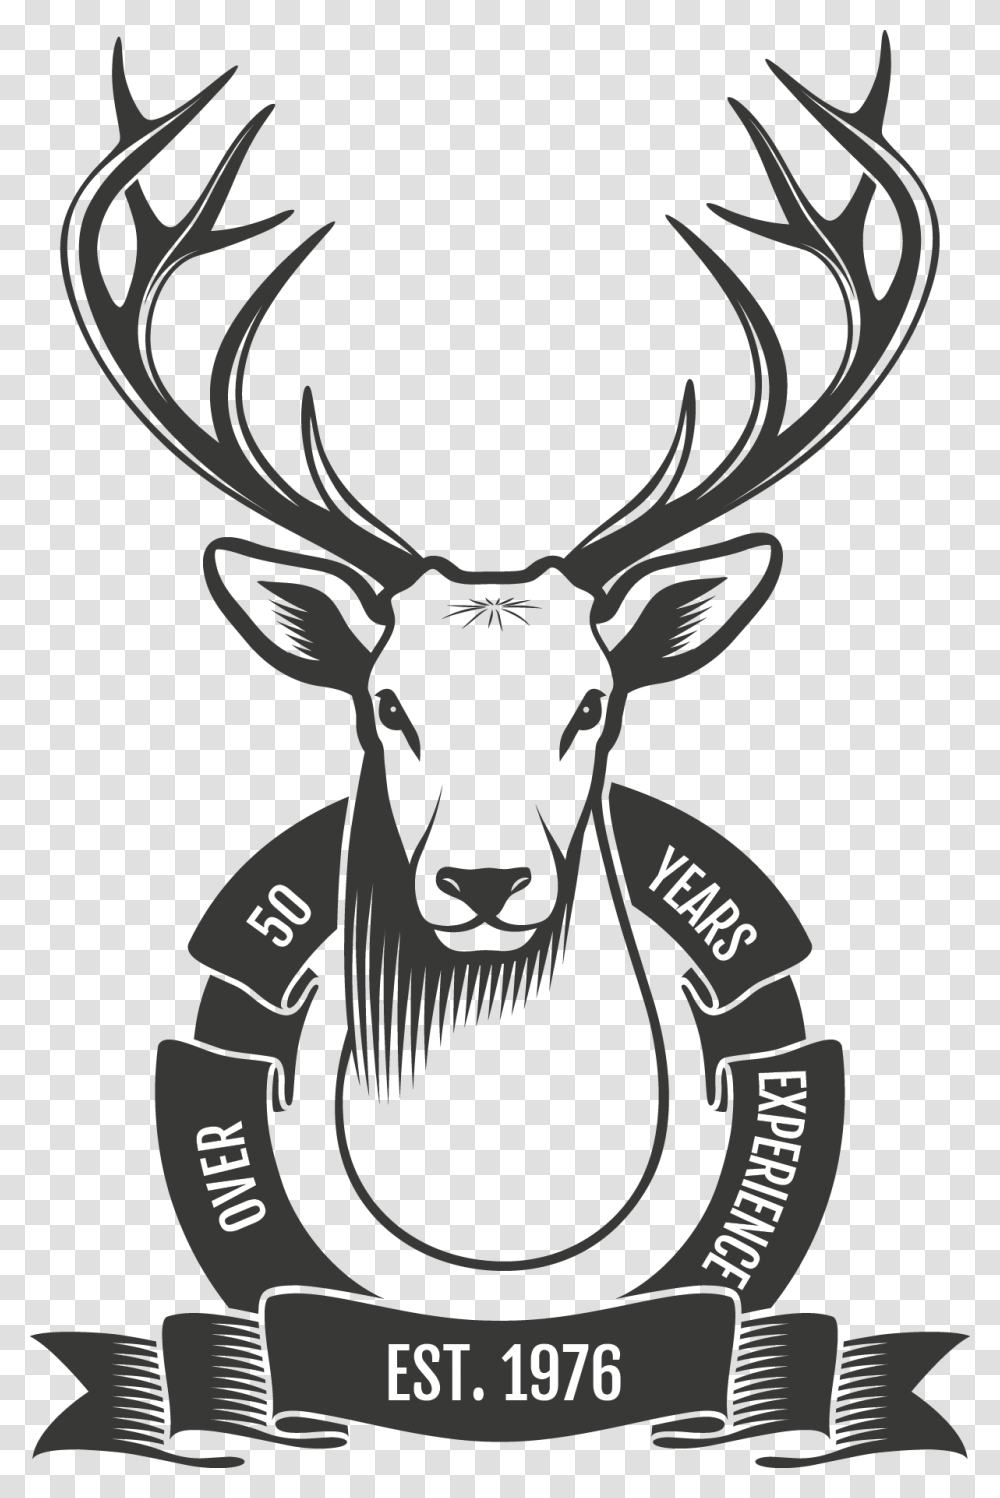 White Tail Deer Mount Graphic With A Ribbon Stating Venado Cola Blanca Dibujo, Elk, Wildlife, Mammal, Animal Transparent Png